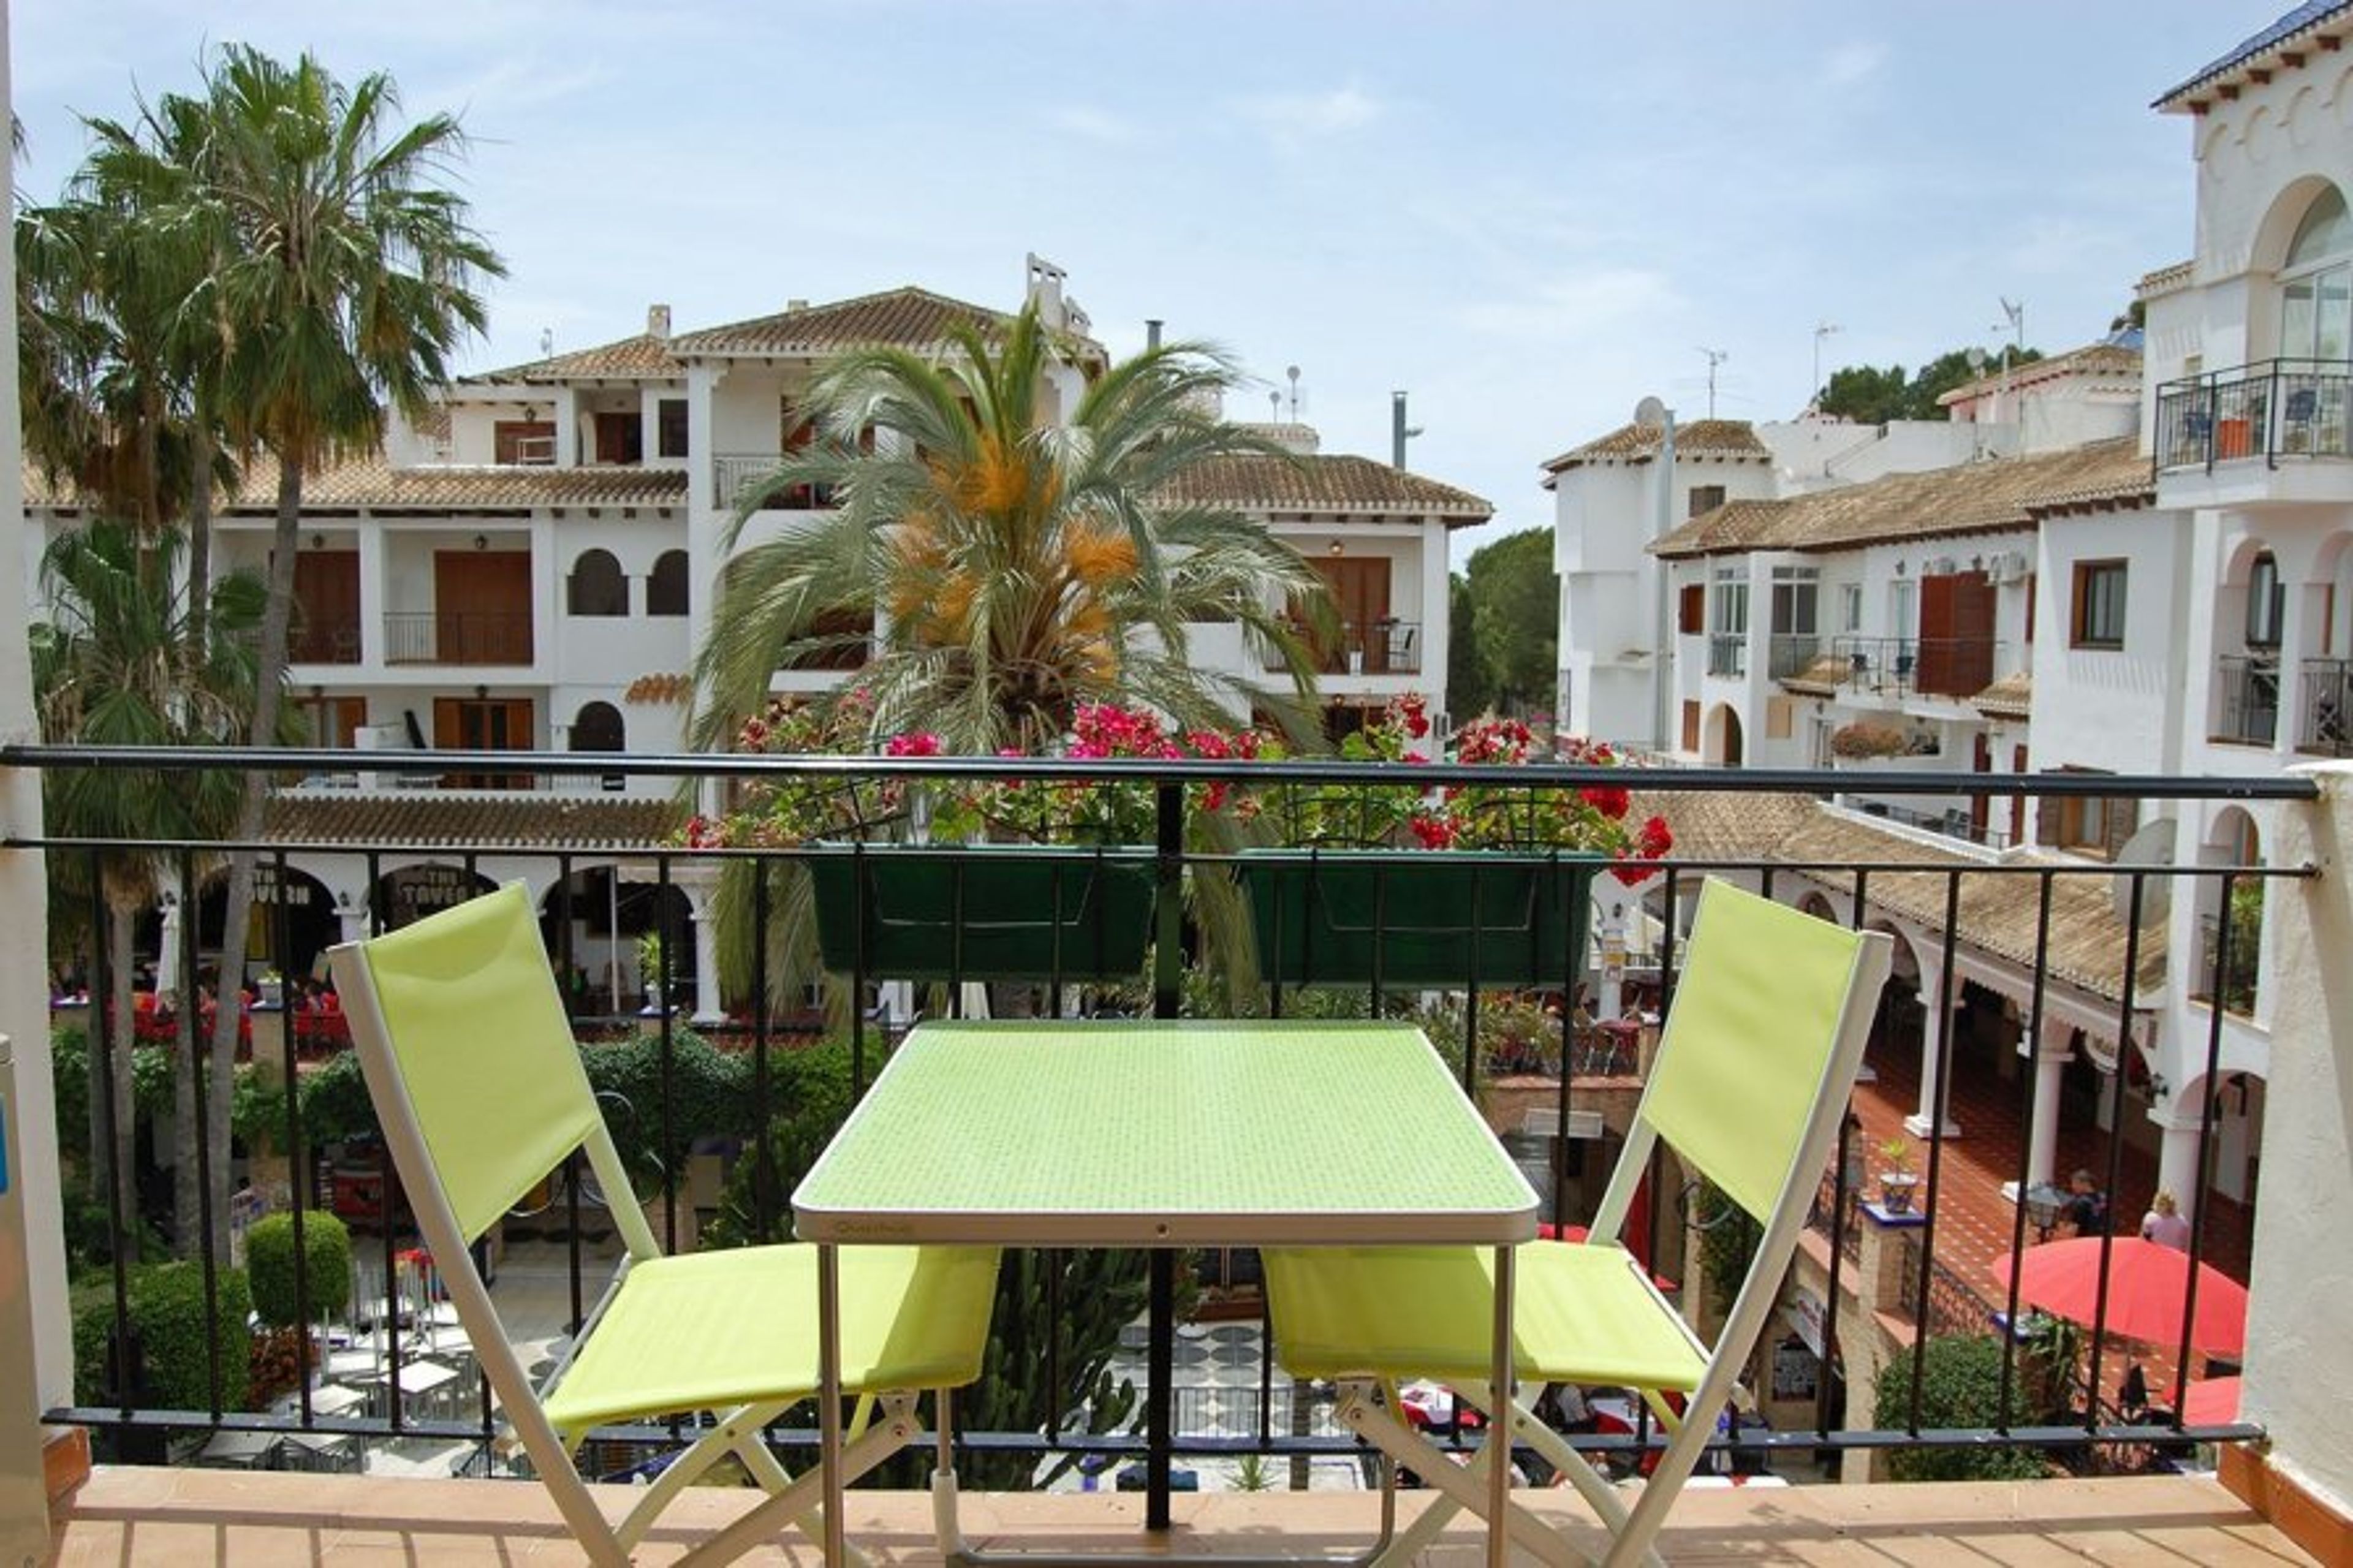 Balcony views into Villamartin Plaza